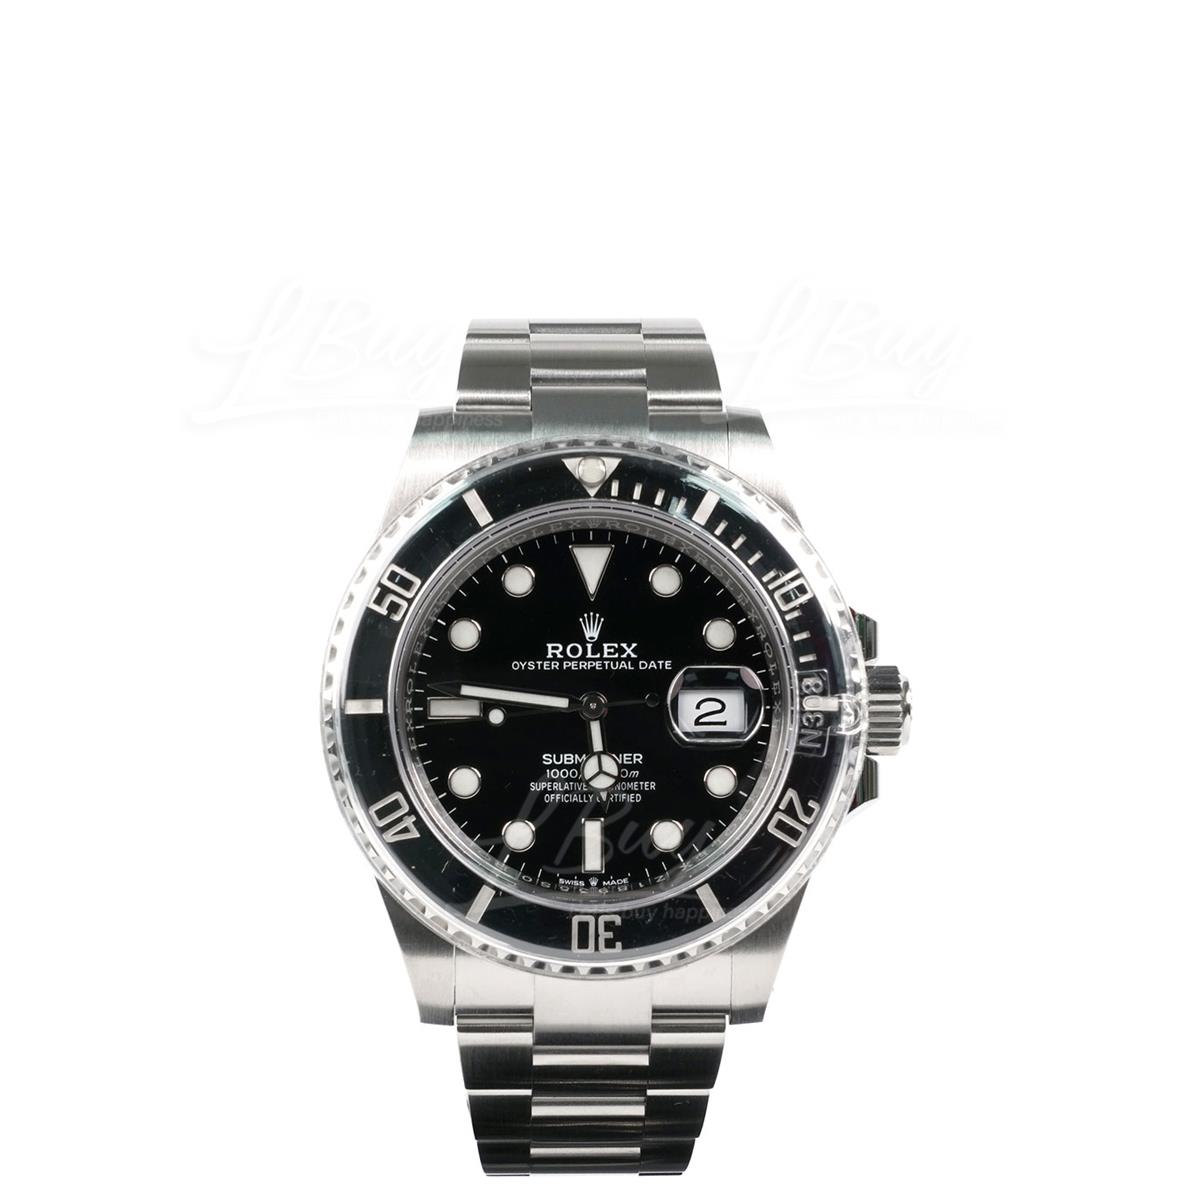 Rolex 126610LN Submariner Date Watch